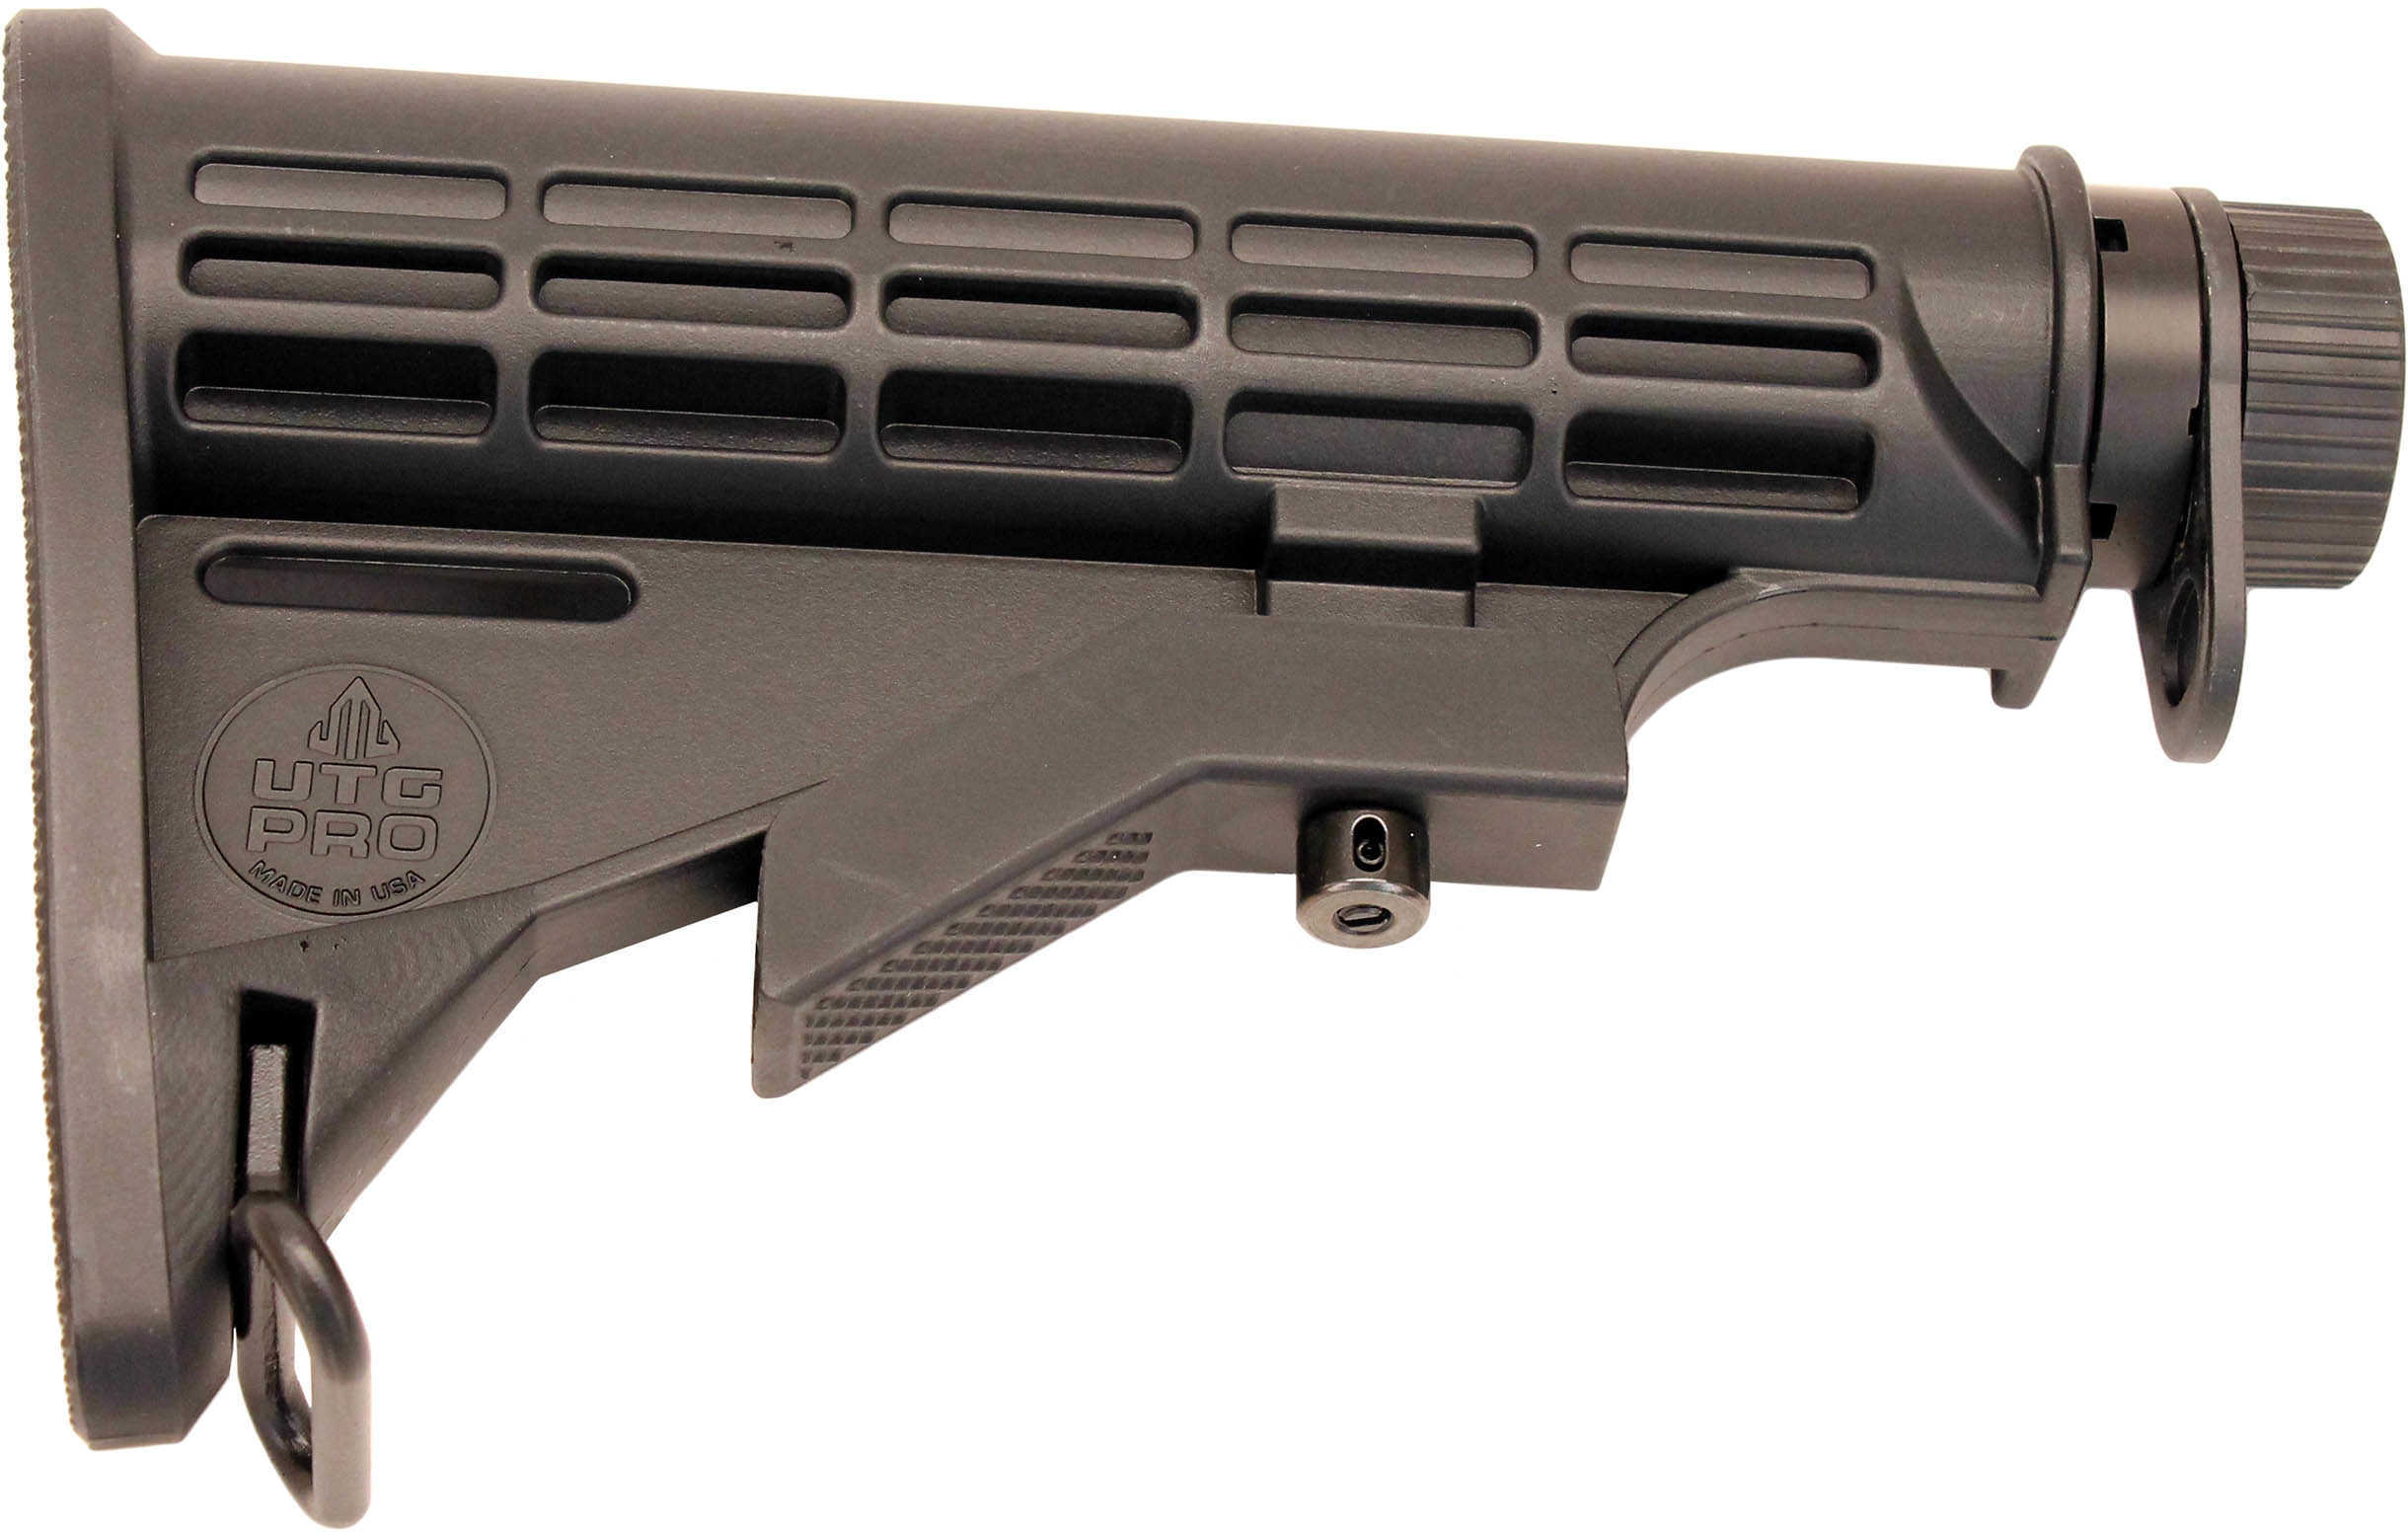 Leapers UTG RBU6Bm Mil-Spec Rifle AR15/M16 Buttstock Kit Polymer/Aluminum Black